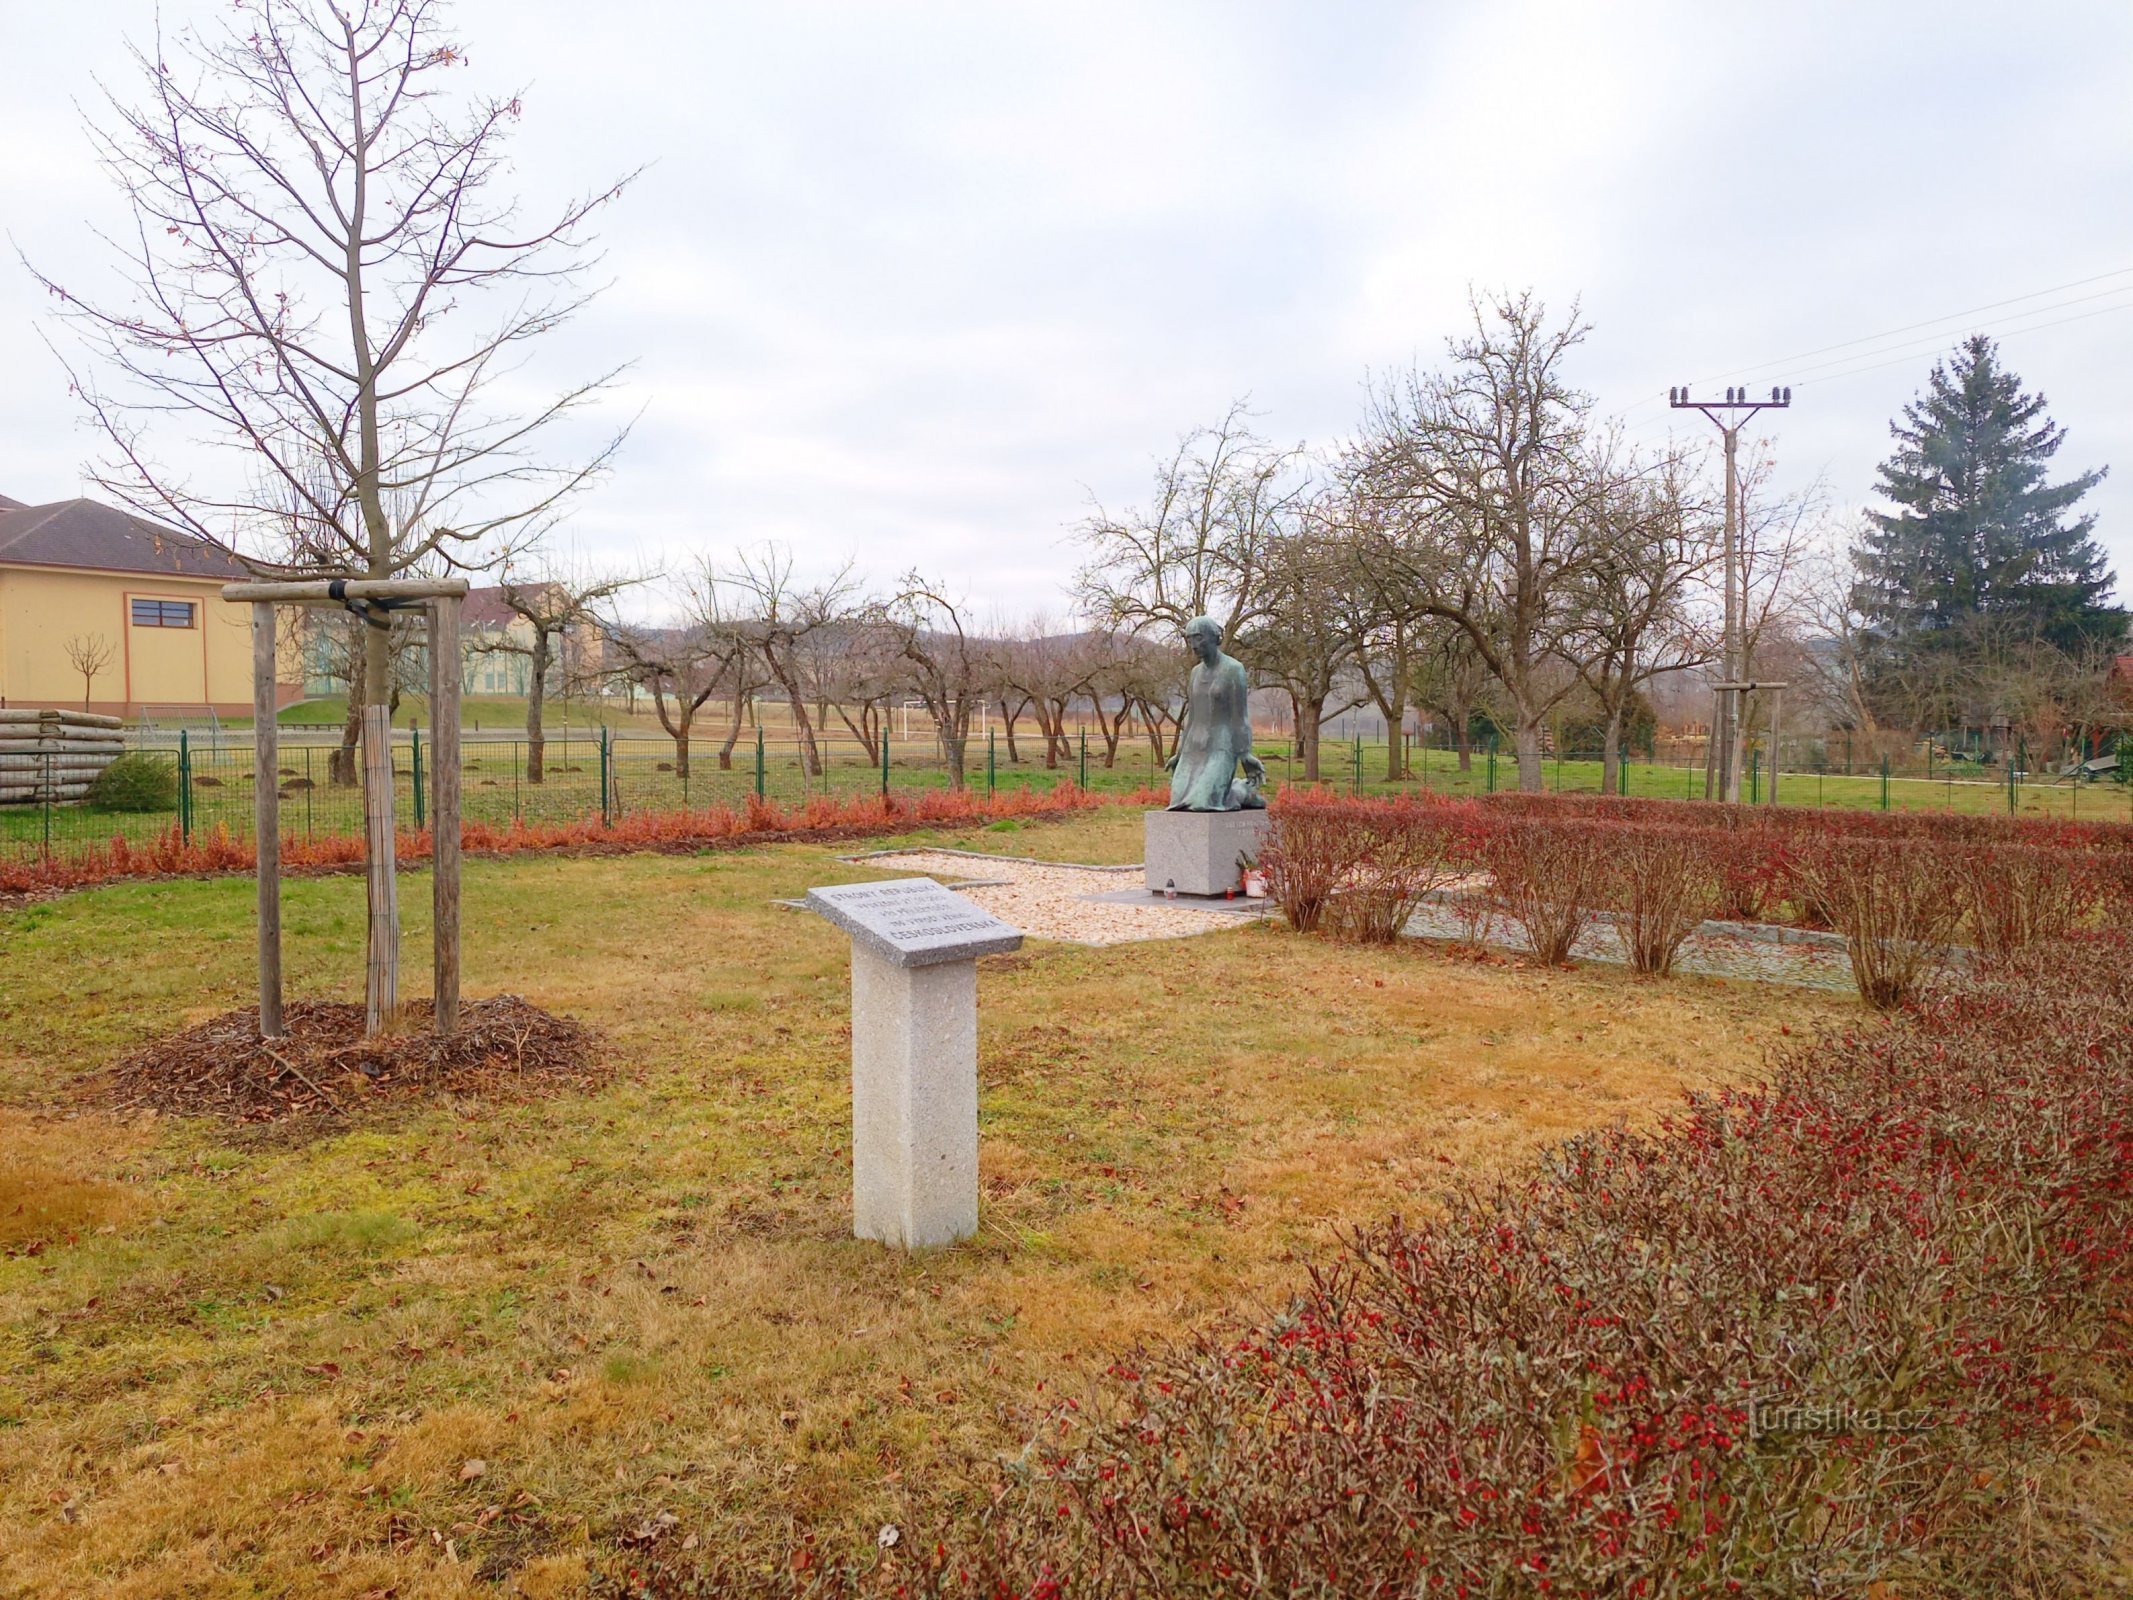 2. A háború áldozatainak emlékműve Sedlecben